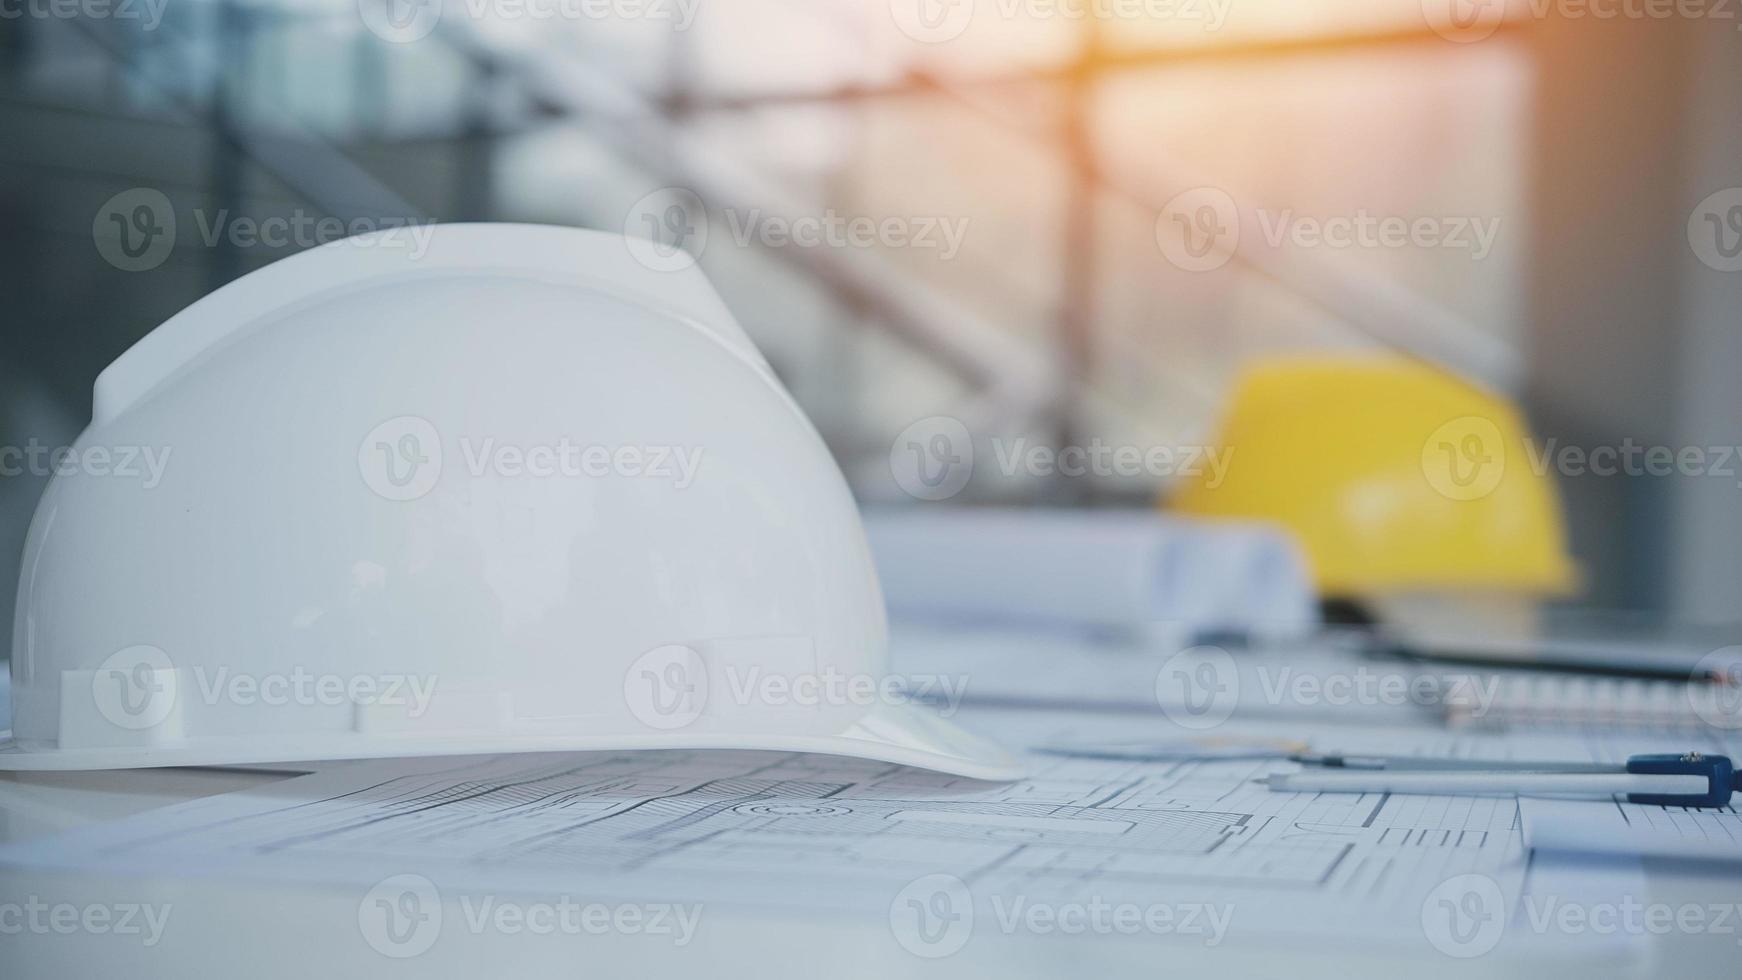 gele helm op tafel met blauwdrukken. veiligheidsproject van werkman als ingenieur of arbeider op betonnen vloer. foto